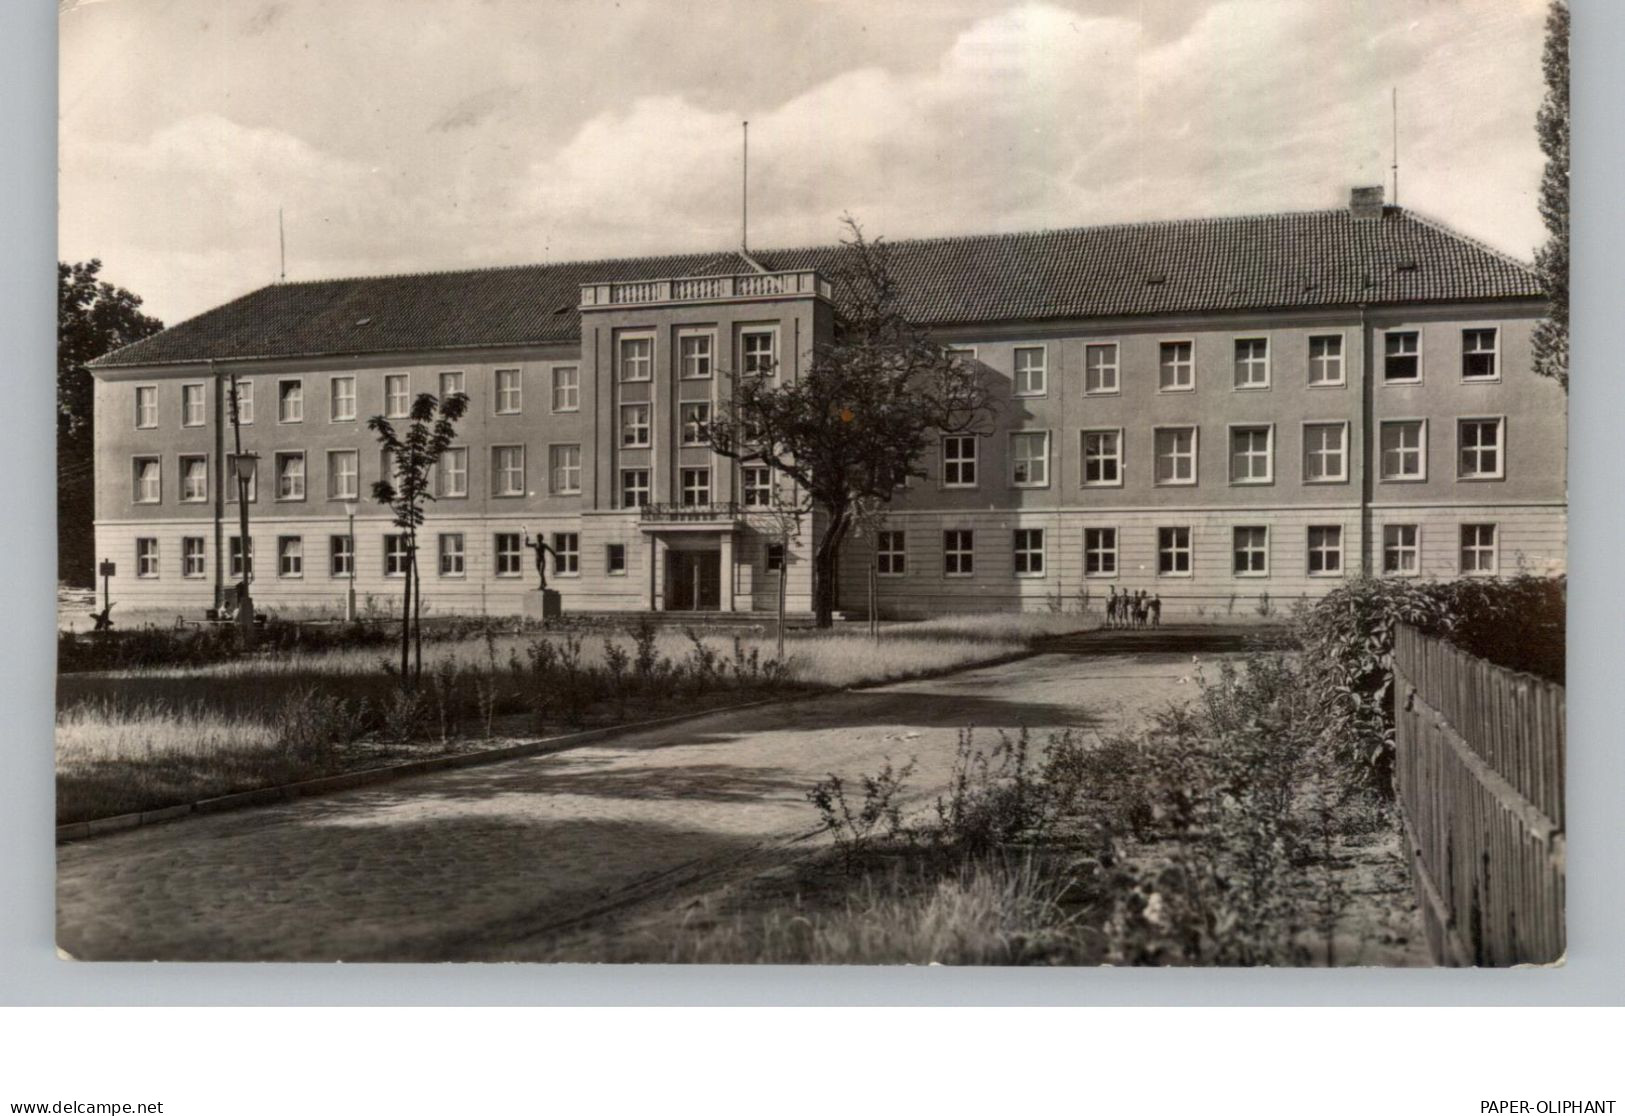 0-1830 RATHENOW, Neue Schule, 1960 - Rathenow